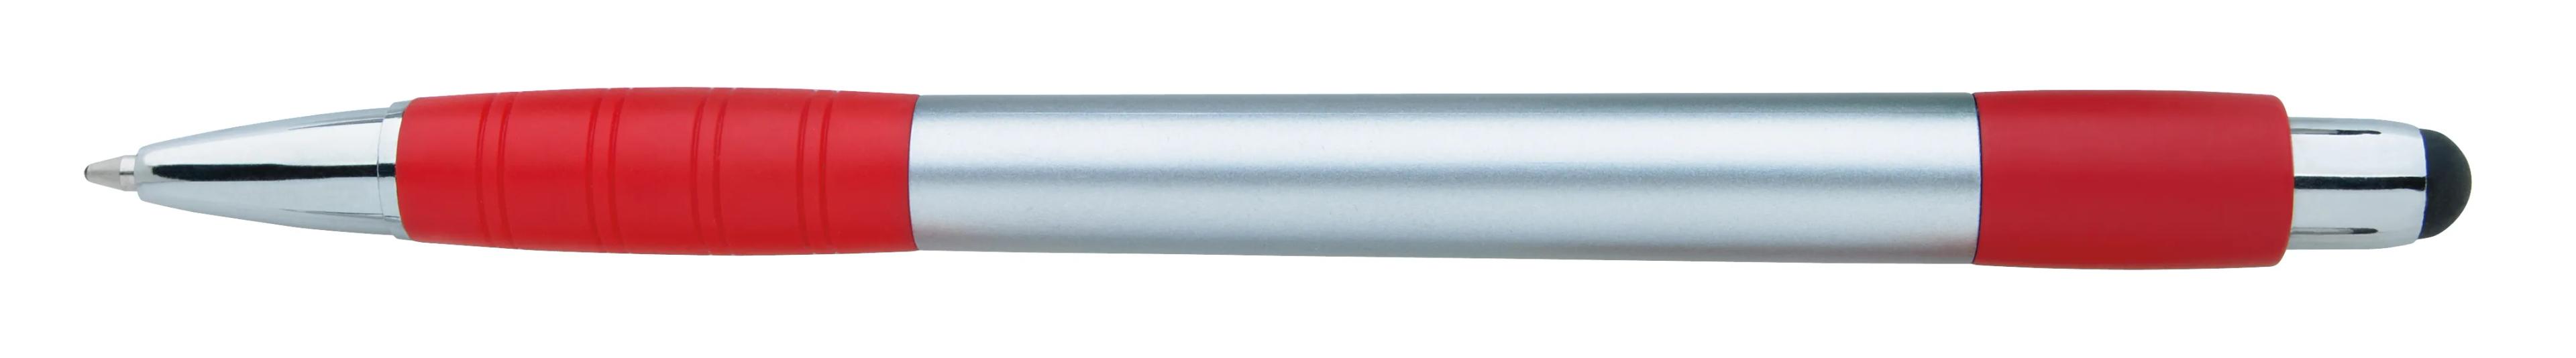 Silver Element Stylus Pen 18 of 53